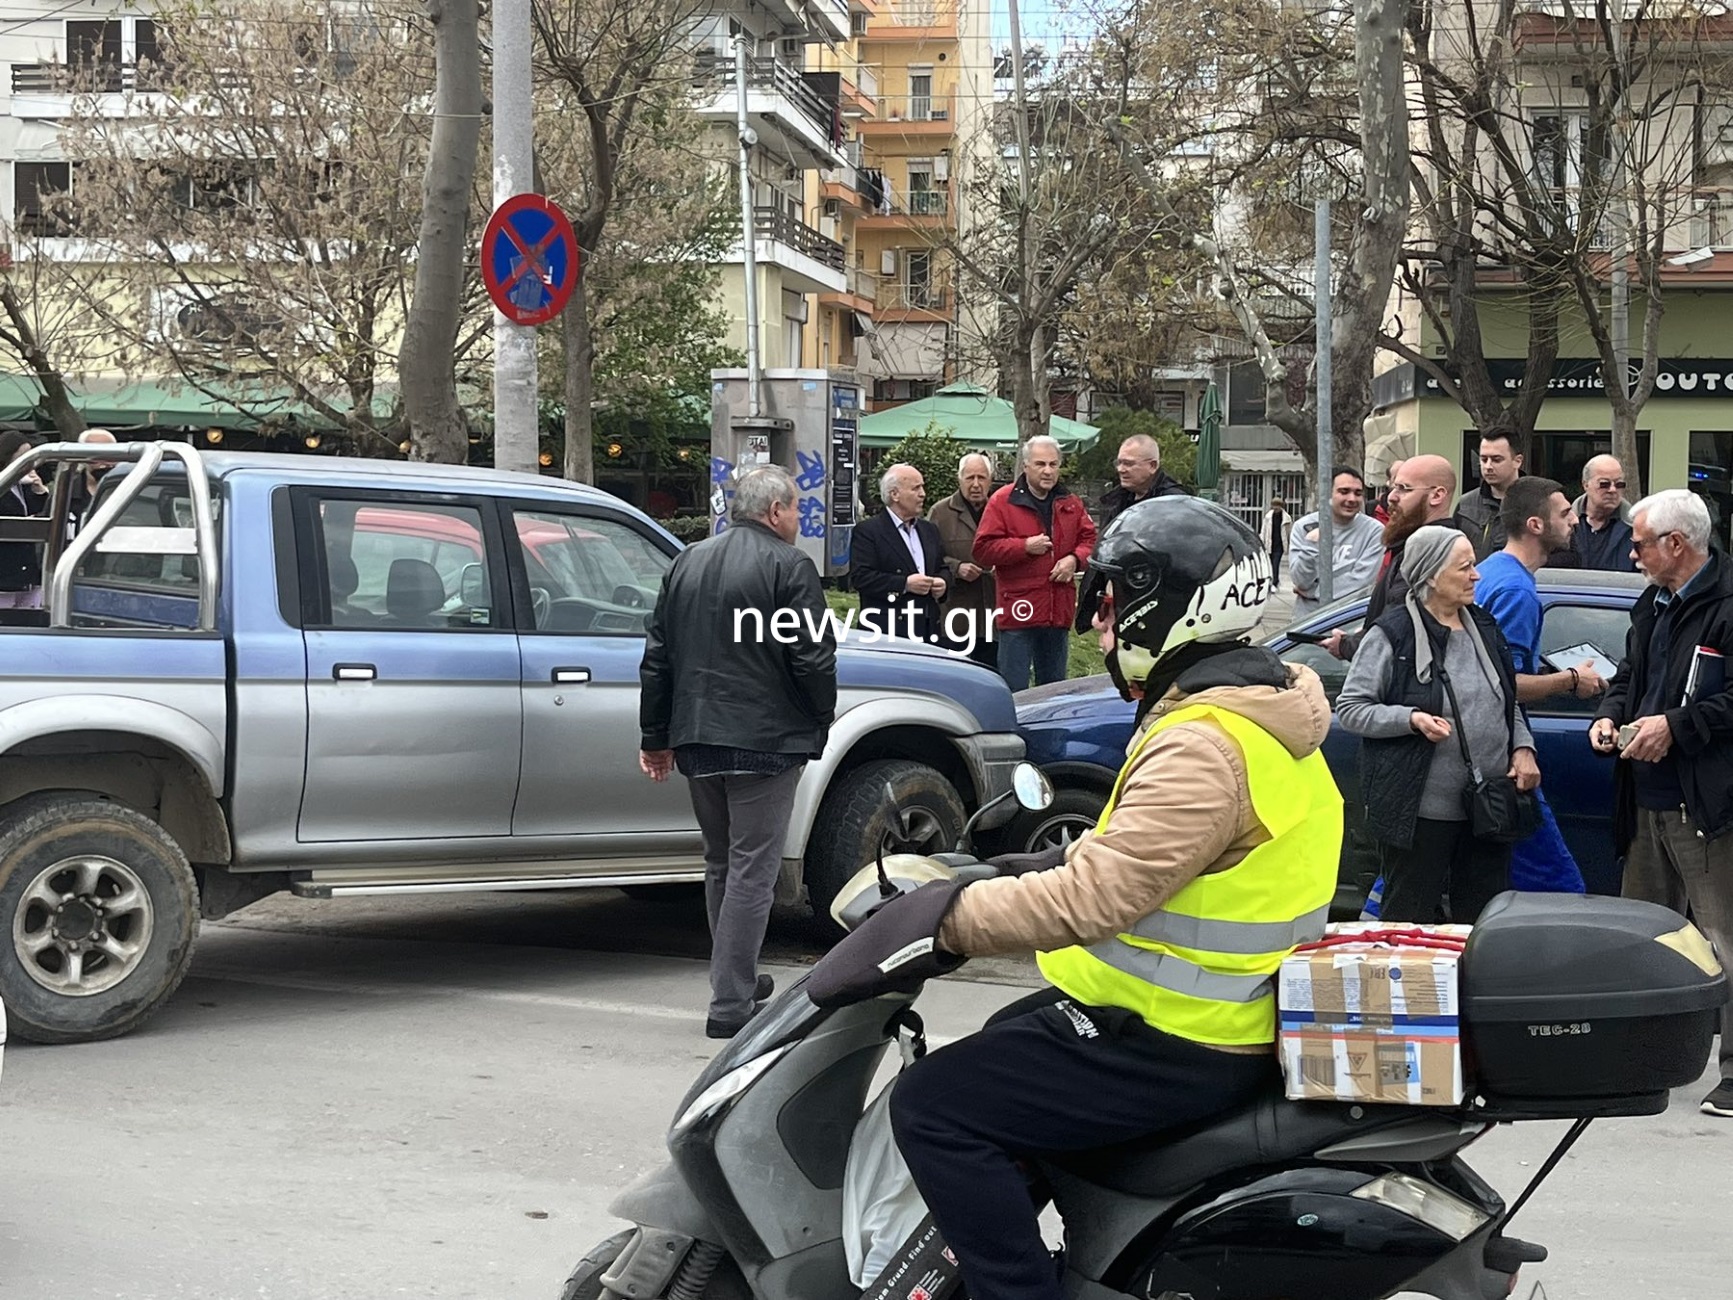 Θεσσαλονίκη: Τροχαίο με οδηγό να χάνει τις αισθήσεις στο τιμόνι και να παρασύρει 4 αυτοκίνητα